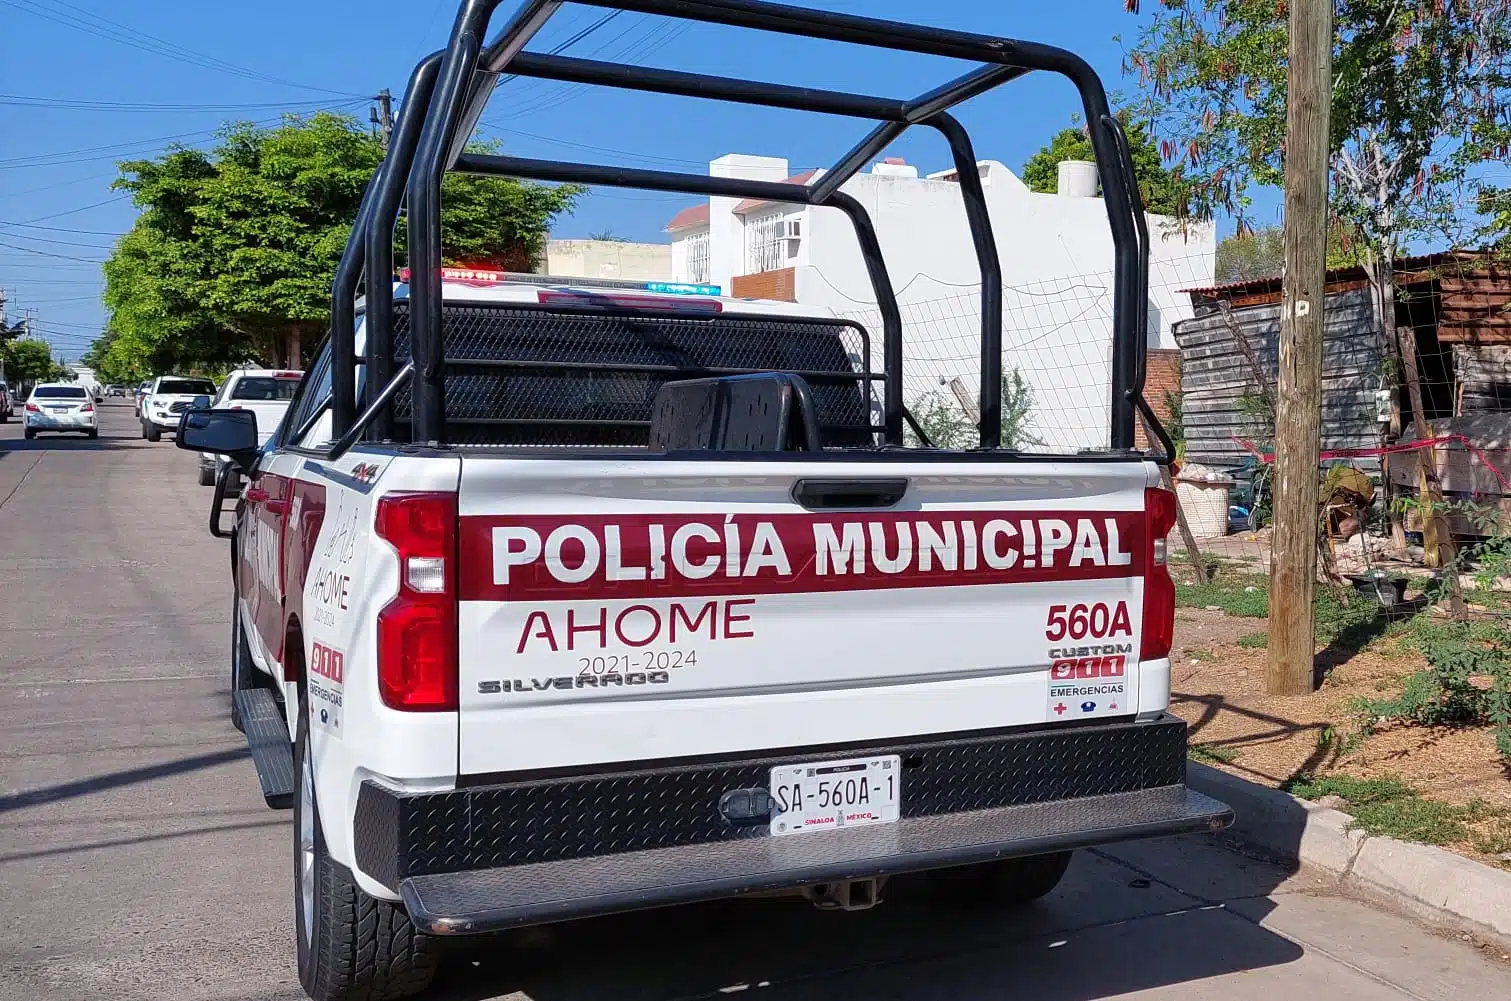 Policía municipal de Ahome.